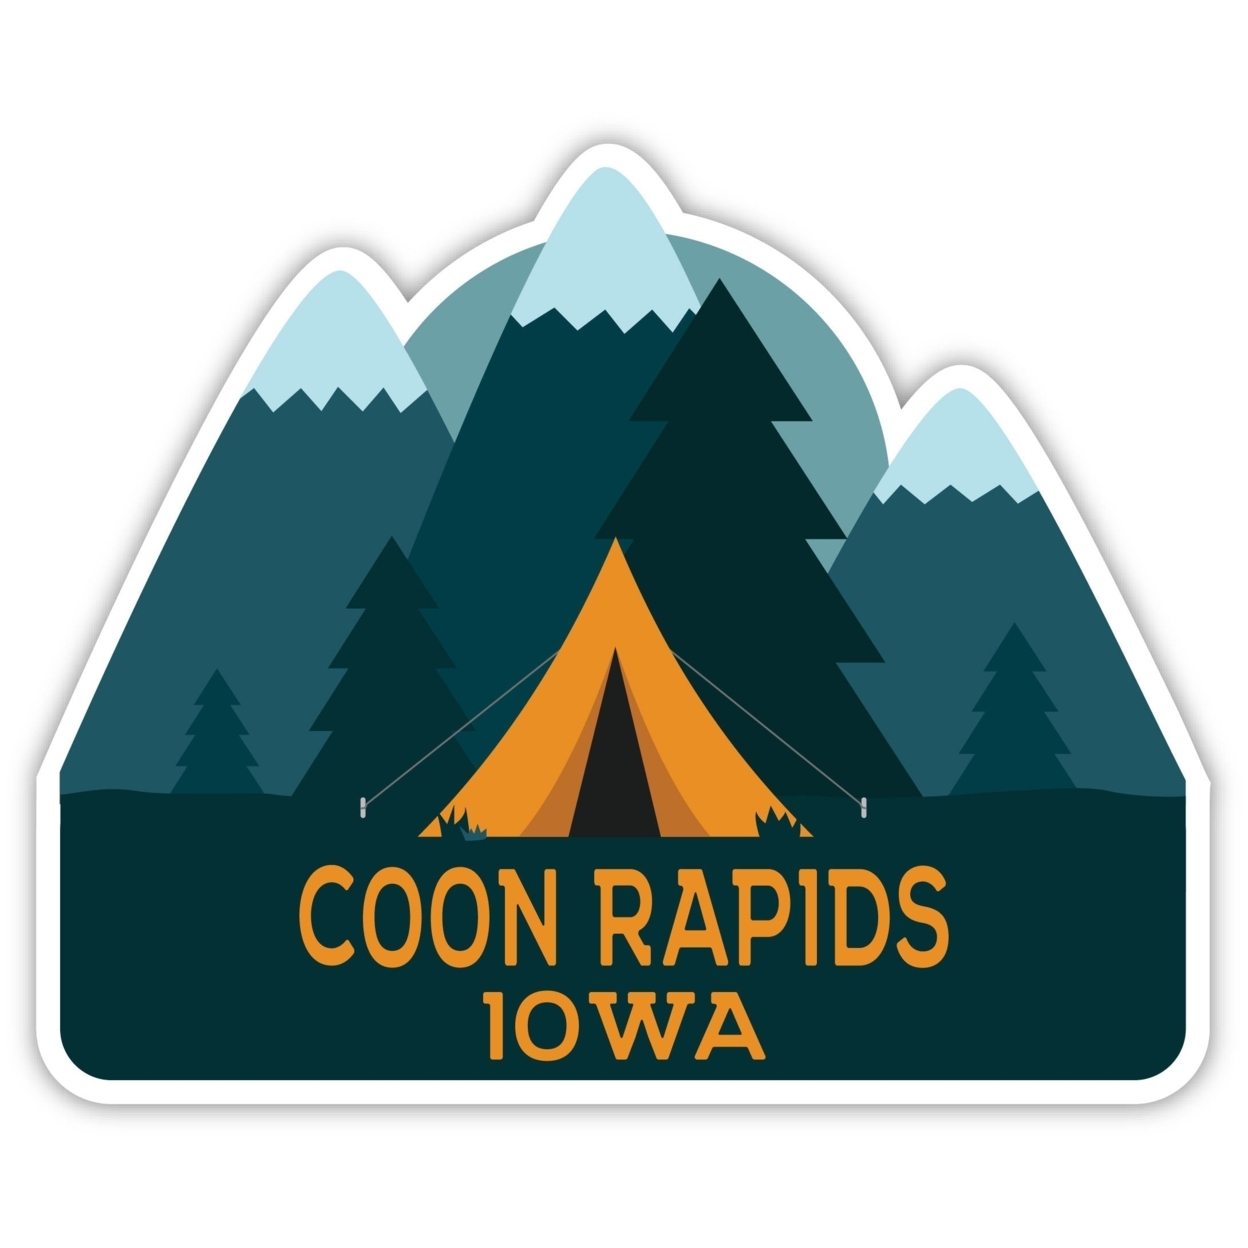 Coon Rapids Iowa Souvenir Decorative Stickers (Choose Theme And Size) - Single Unit, 4-Inch, Tent